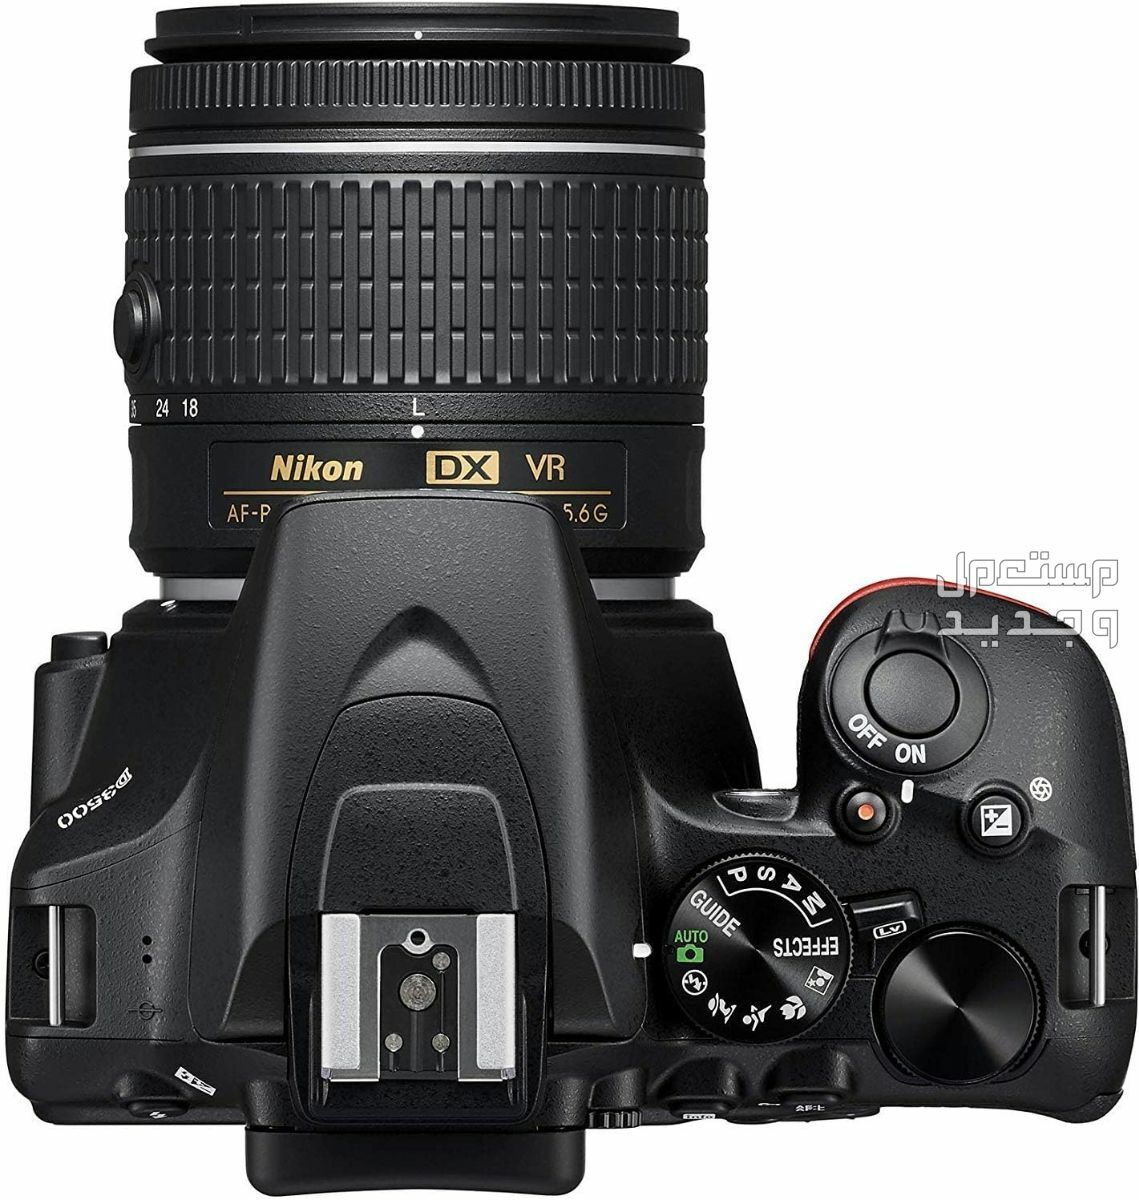 10 كاميرات تصوير ماركات عالمية بأسعار رخيصة سعر كاميرا Nikon D3500